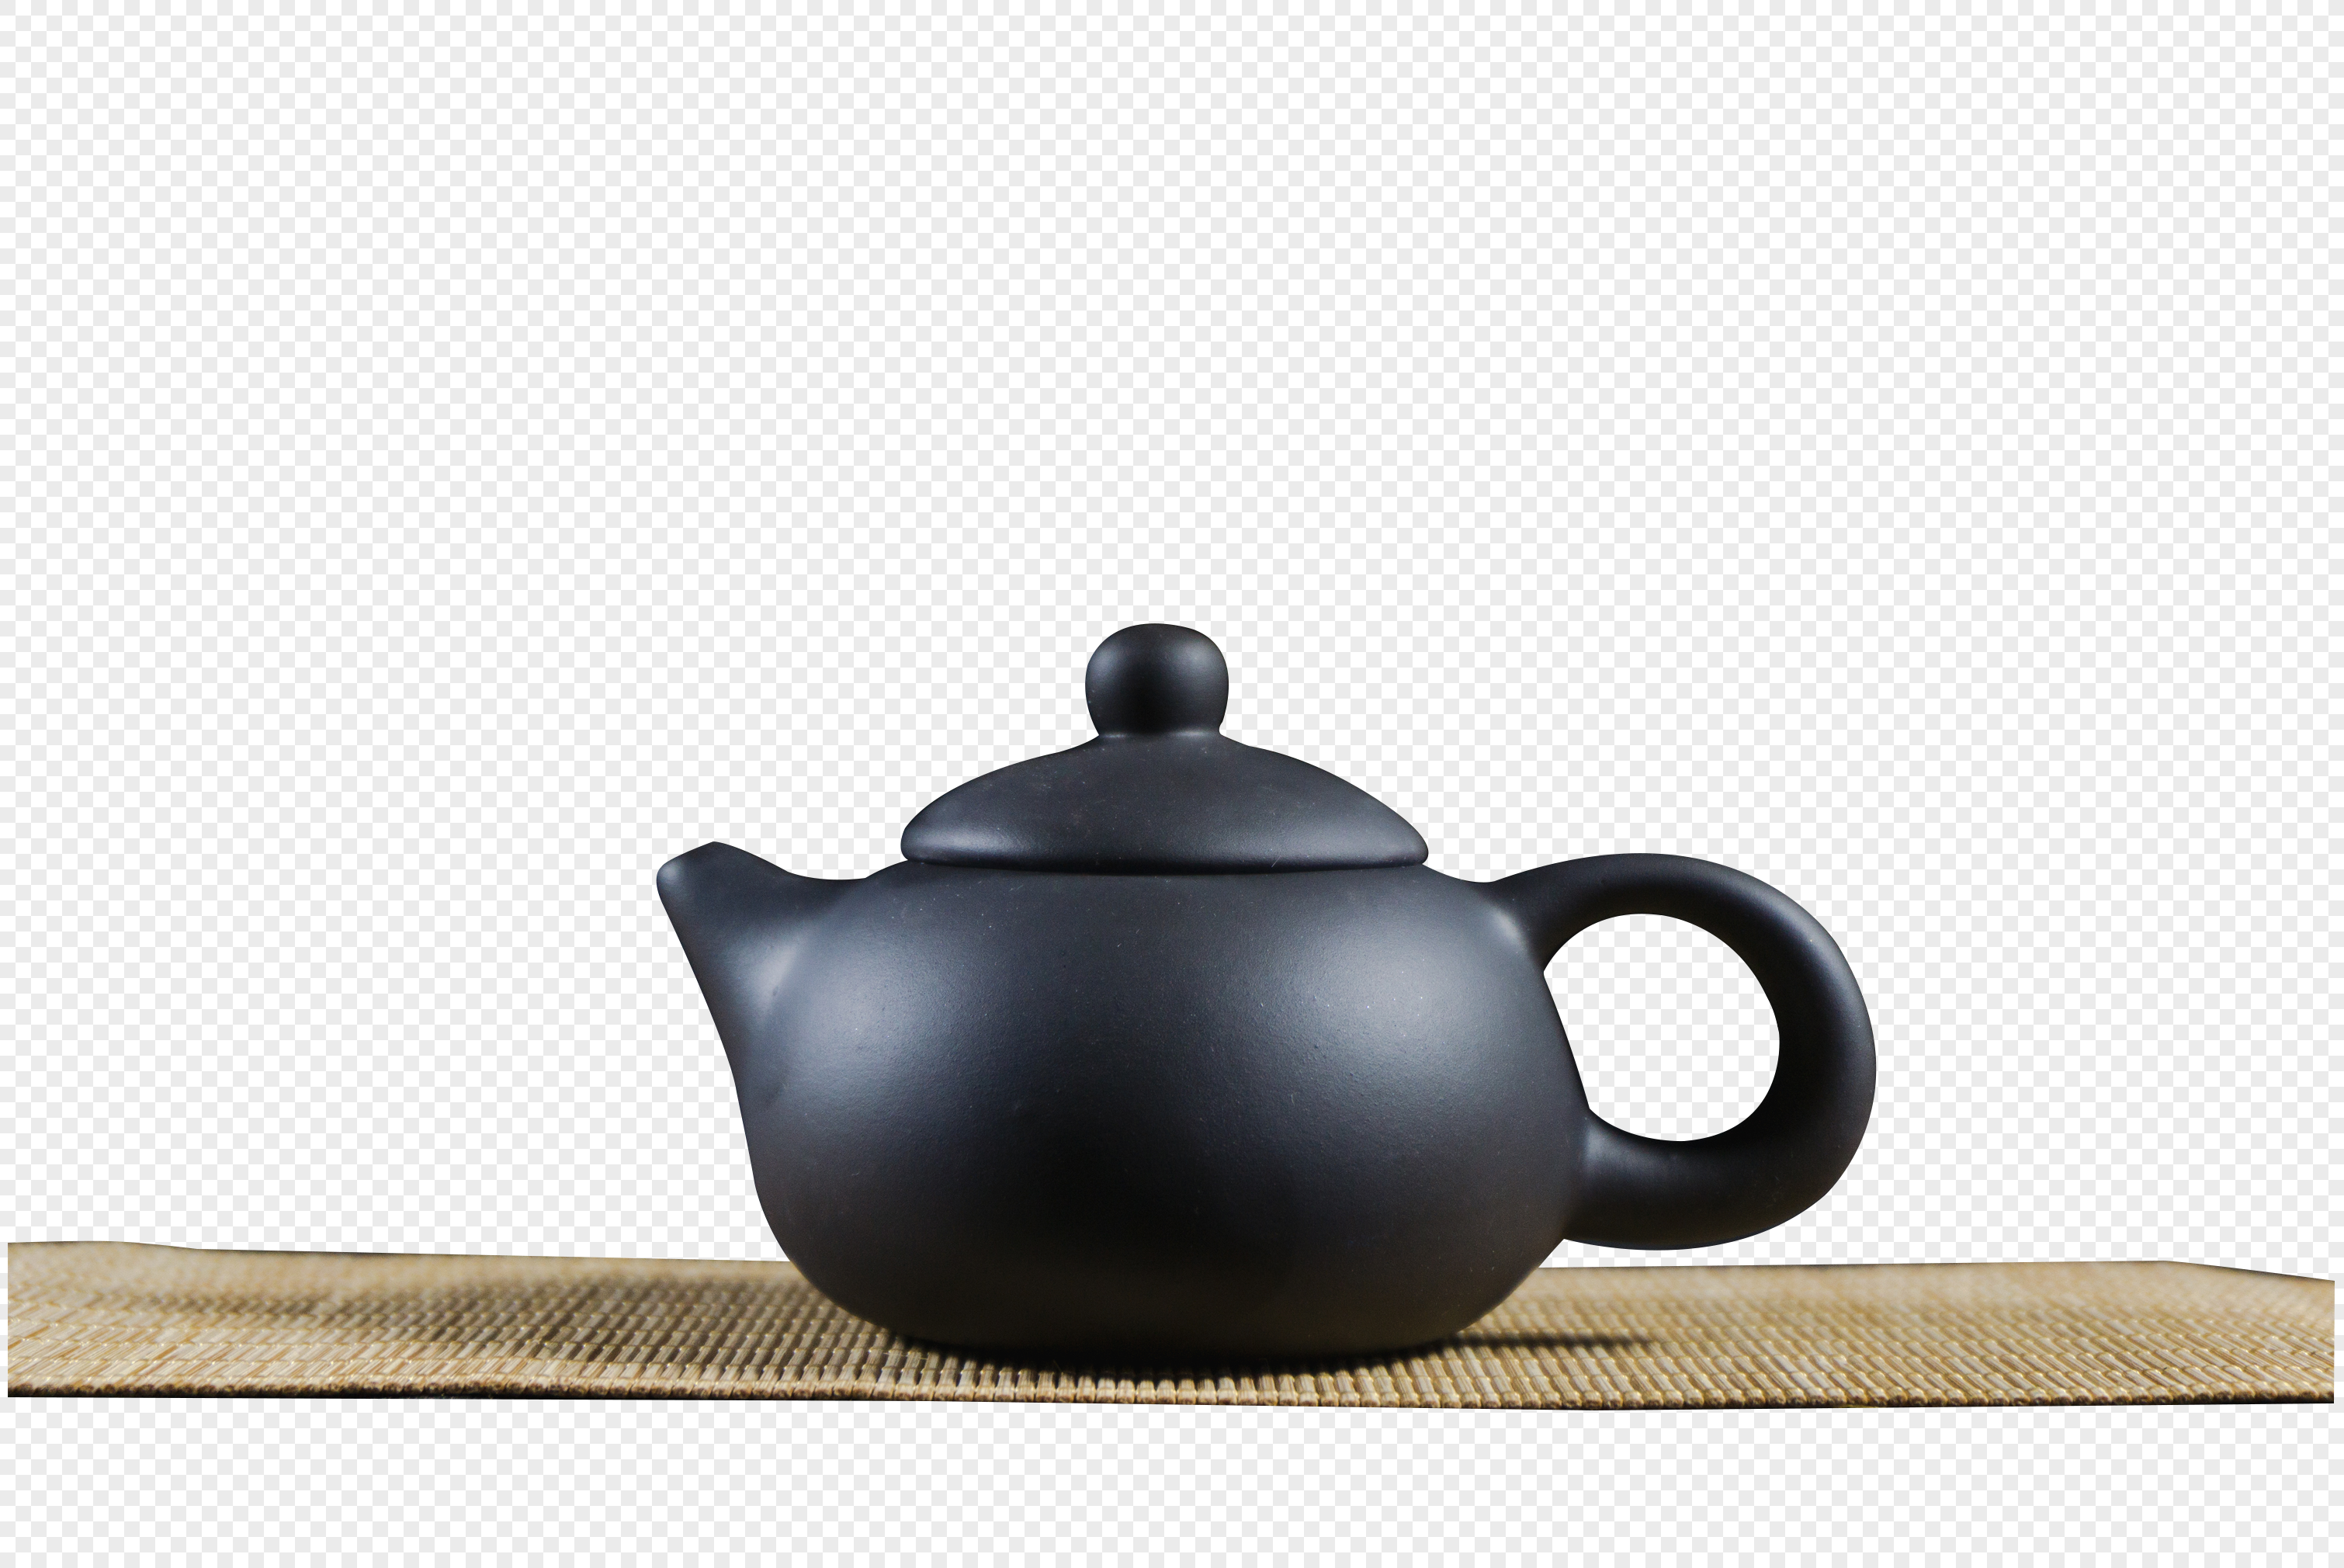 Teapot With A Straw, Pot Tea, Iced Tea, Tea Cups PNG Transparent